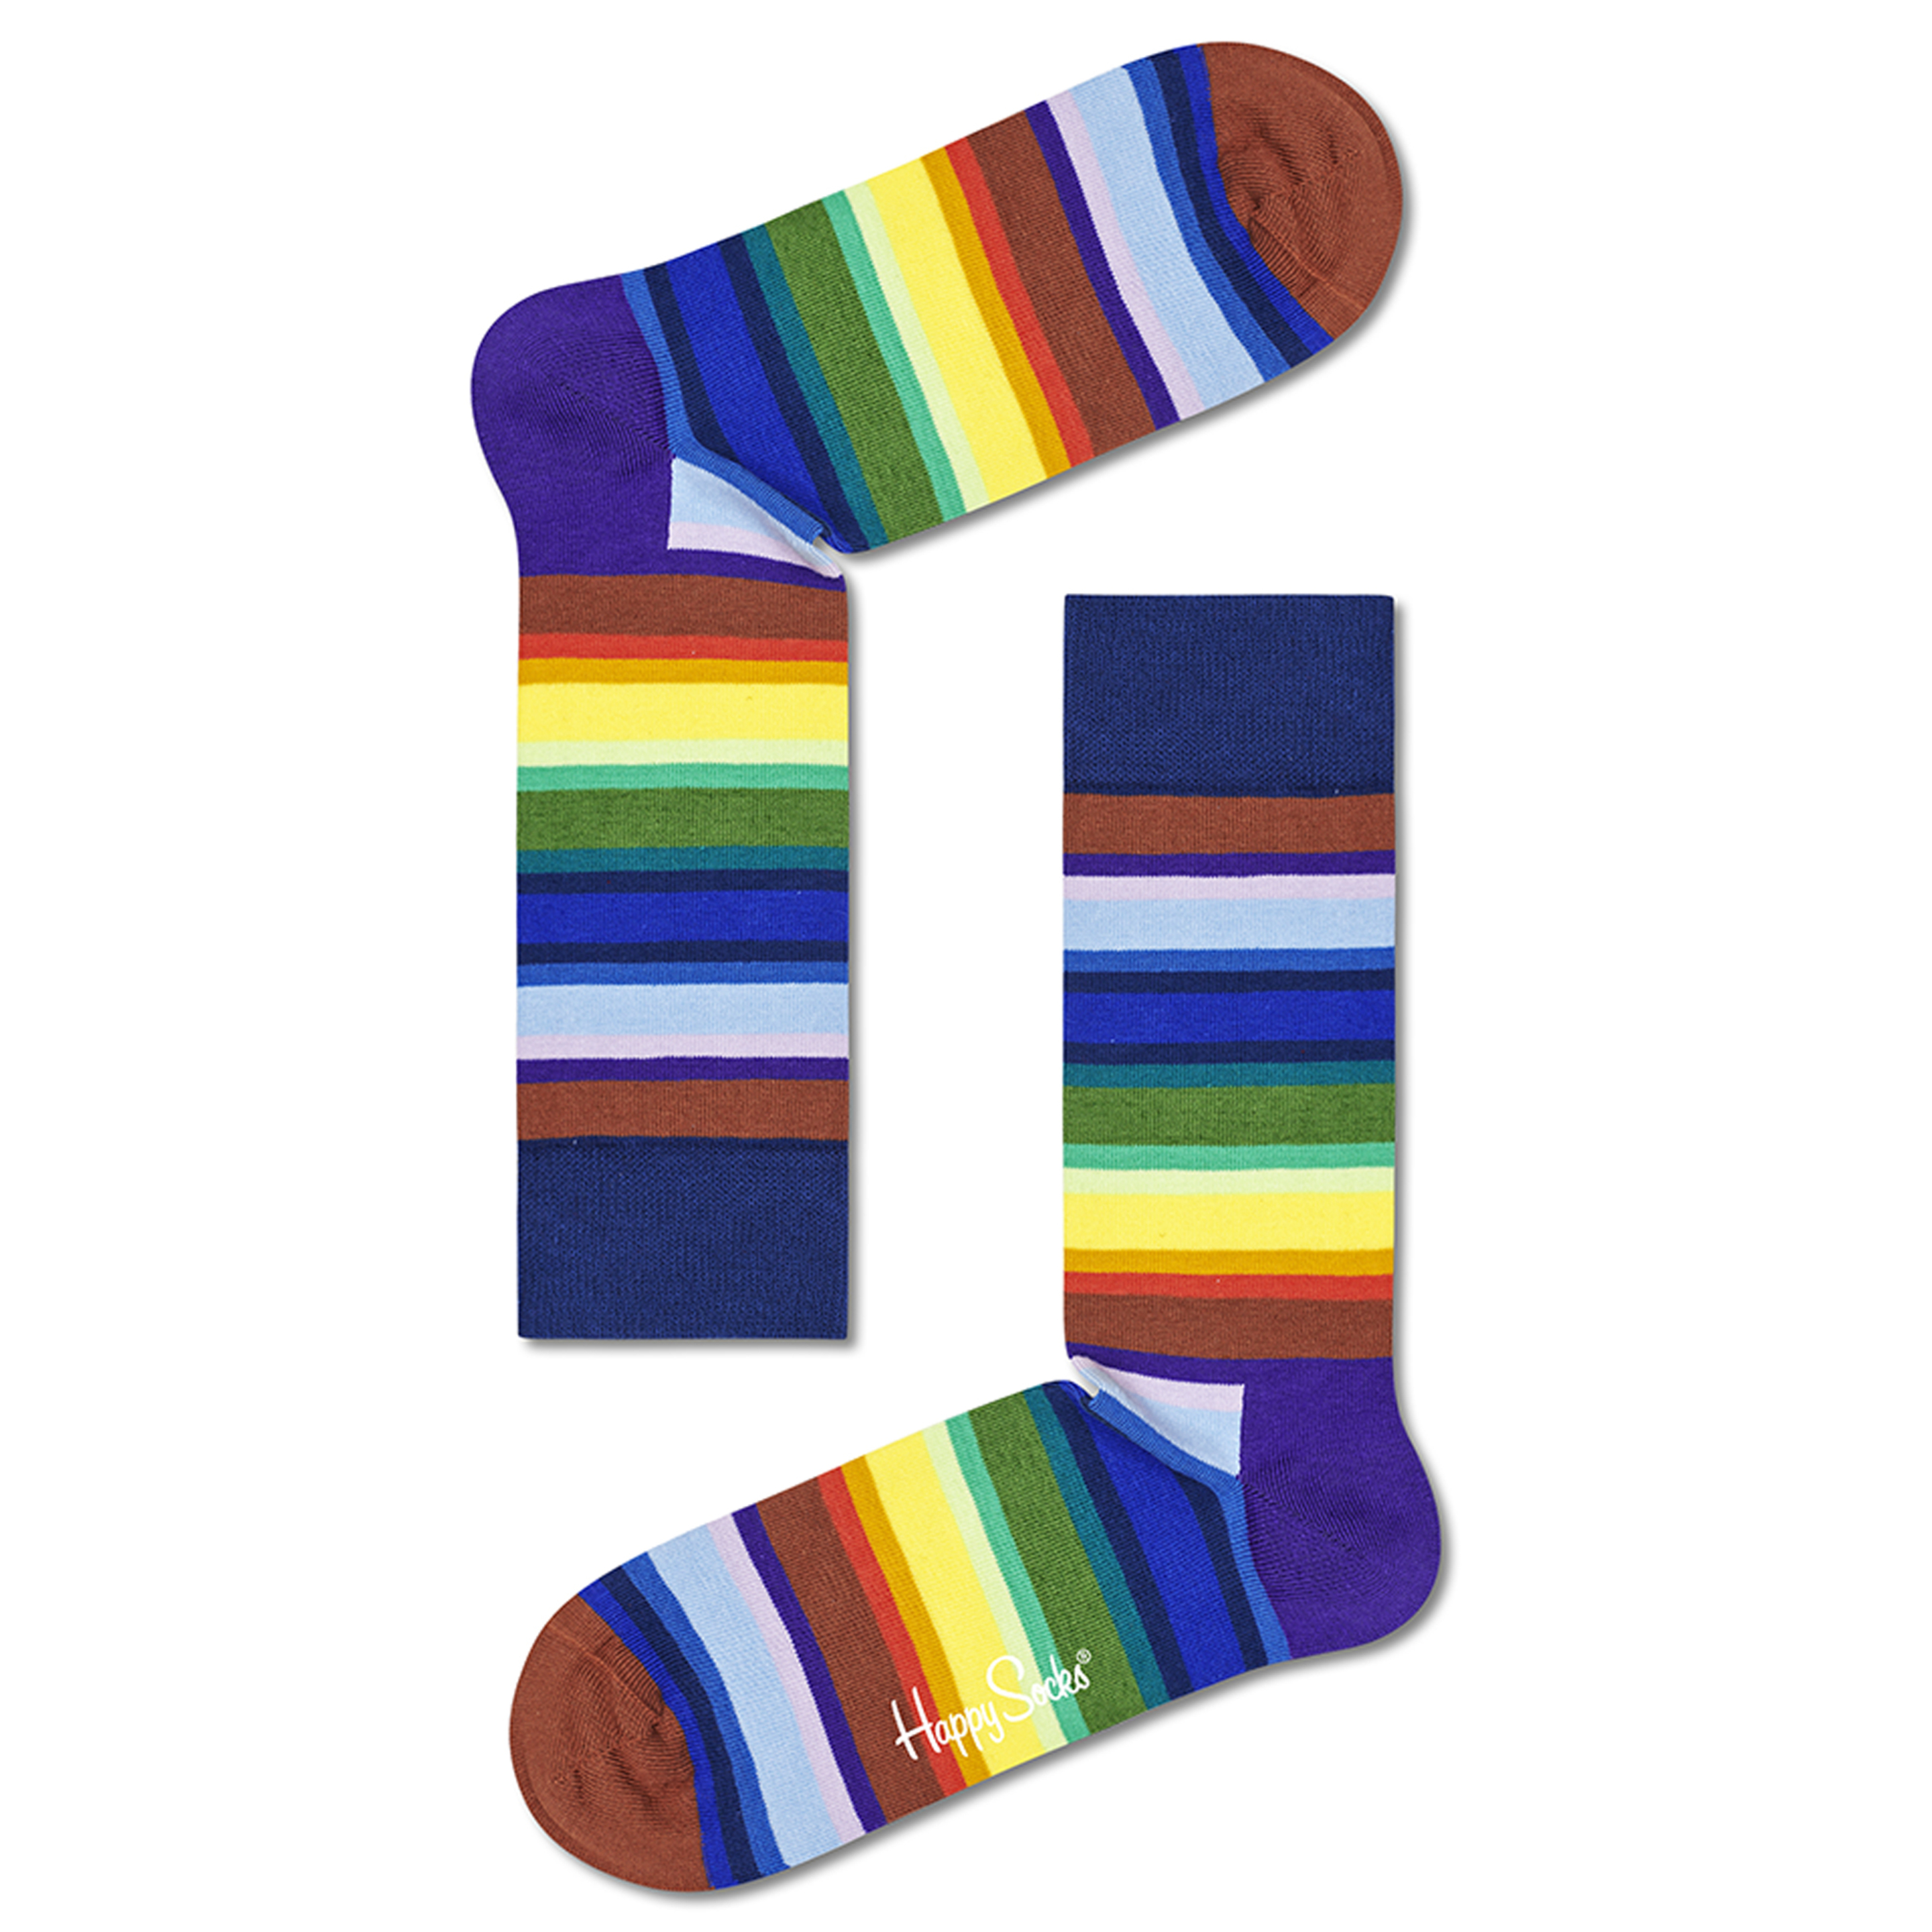 Calcetines Happy Socks Coloridos - multicolor - 